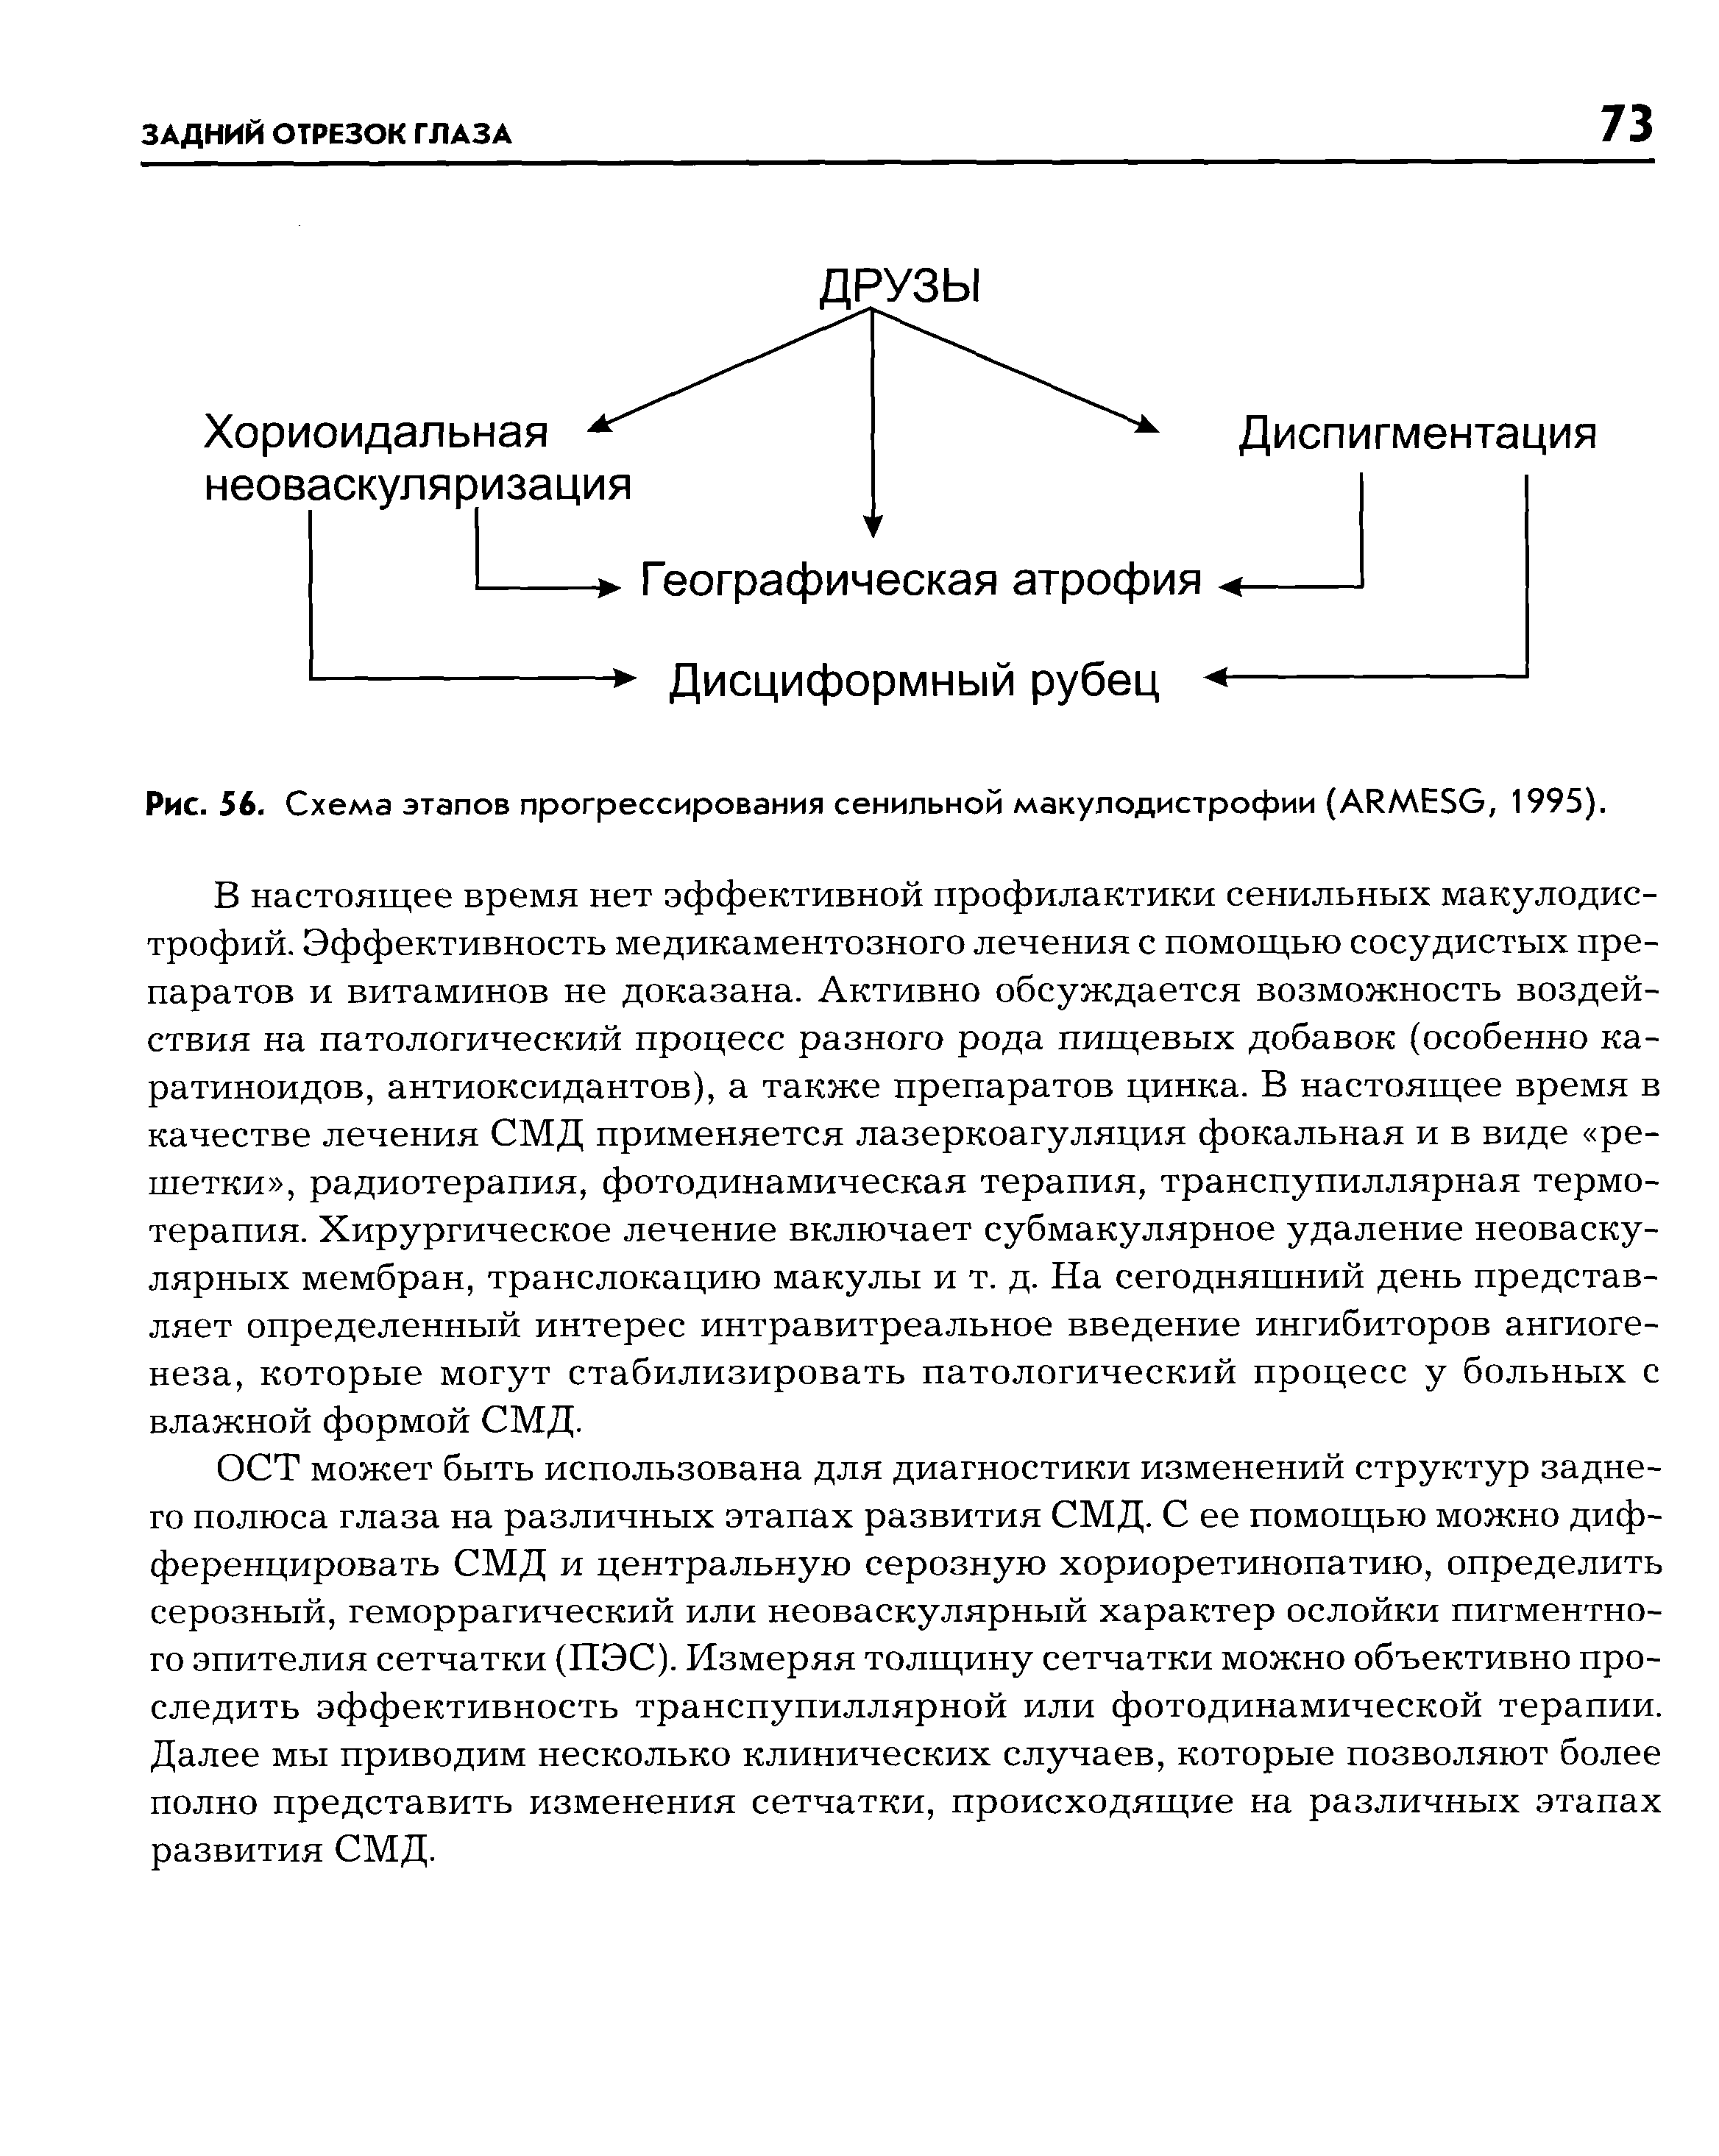 Рис. 56. Схема этапов прогрессирования сенильной макулодистрофии (А1 МЕ5С, 1995).